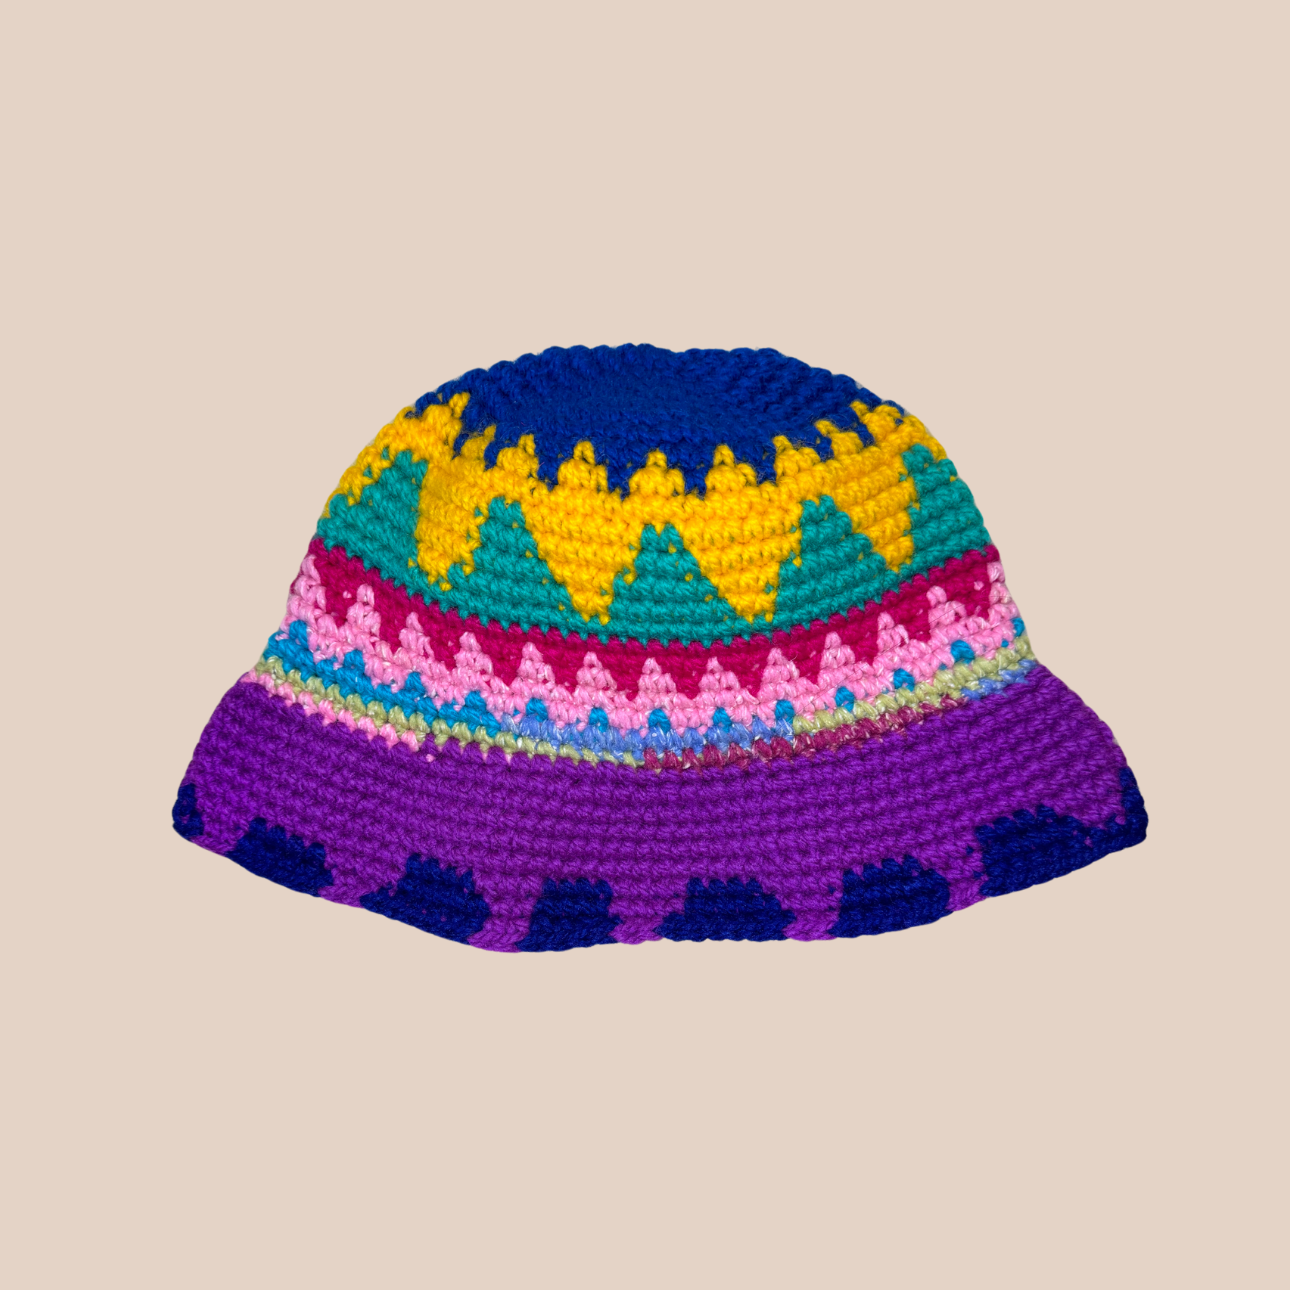 Image du bucket hat de Maison Badigo, bucket hat (bob) en laine crocheté détail soleil multicolore et tendance